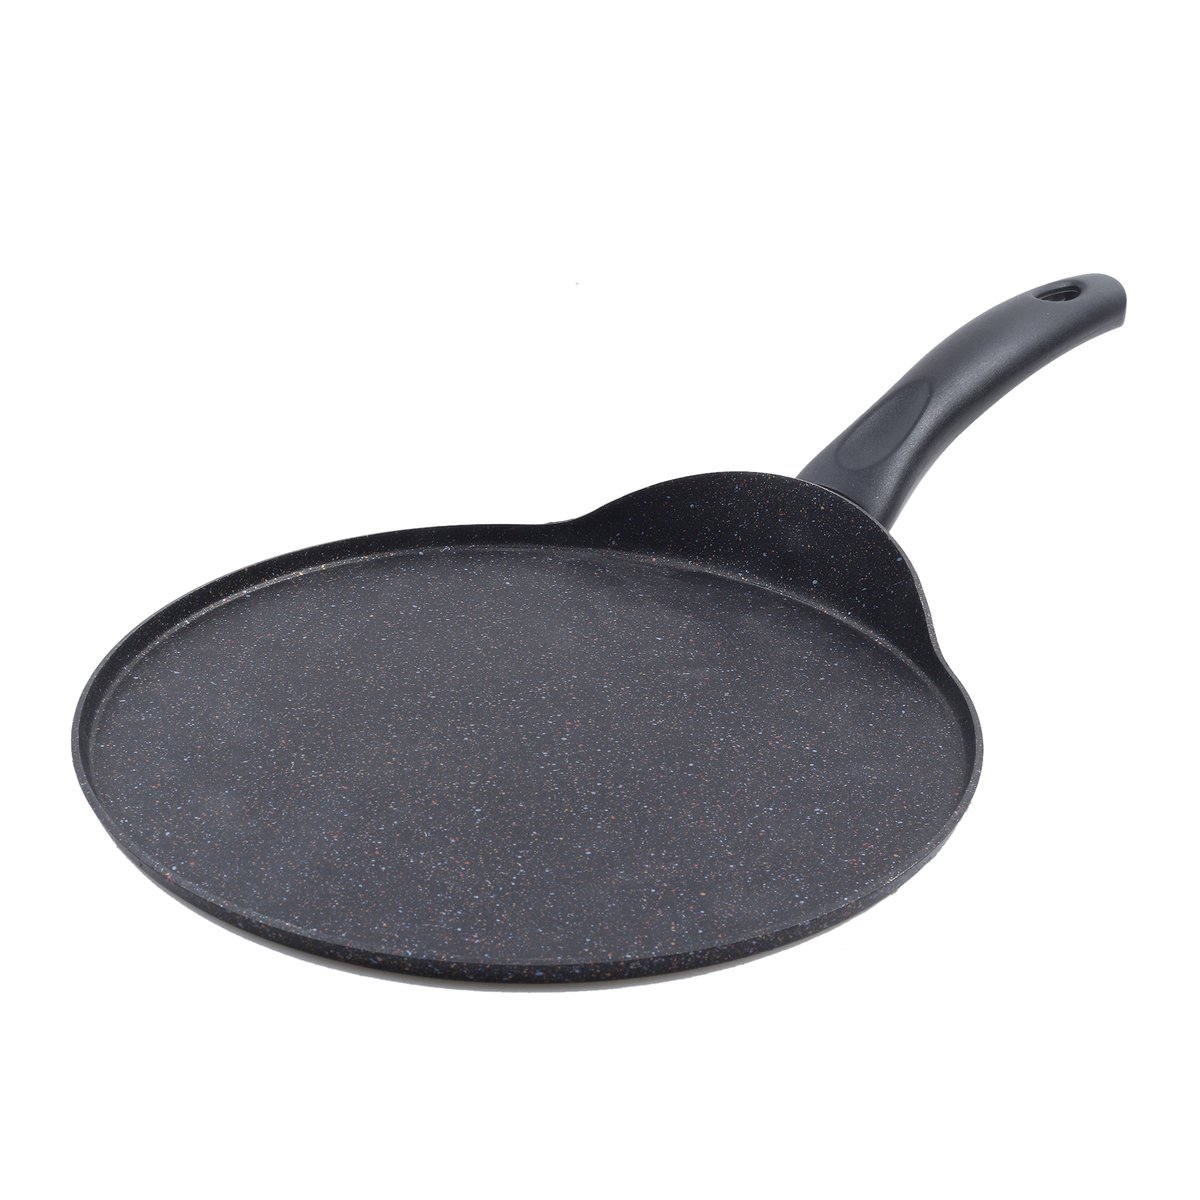 Gigilli Crepe Pan, 26 cm, 26CRPSP